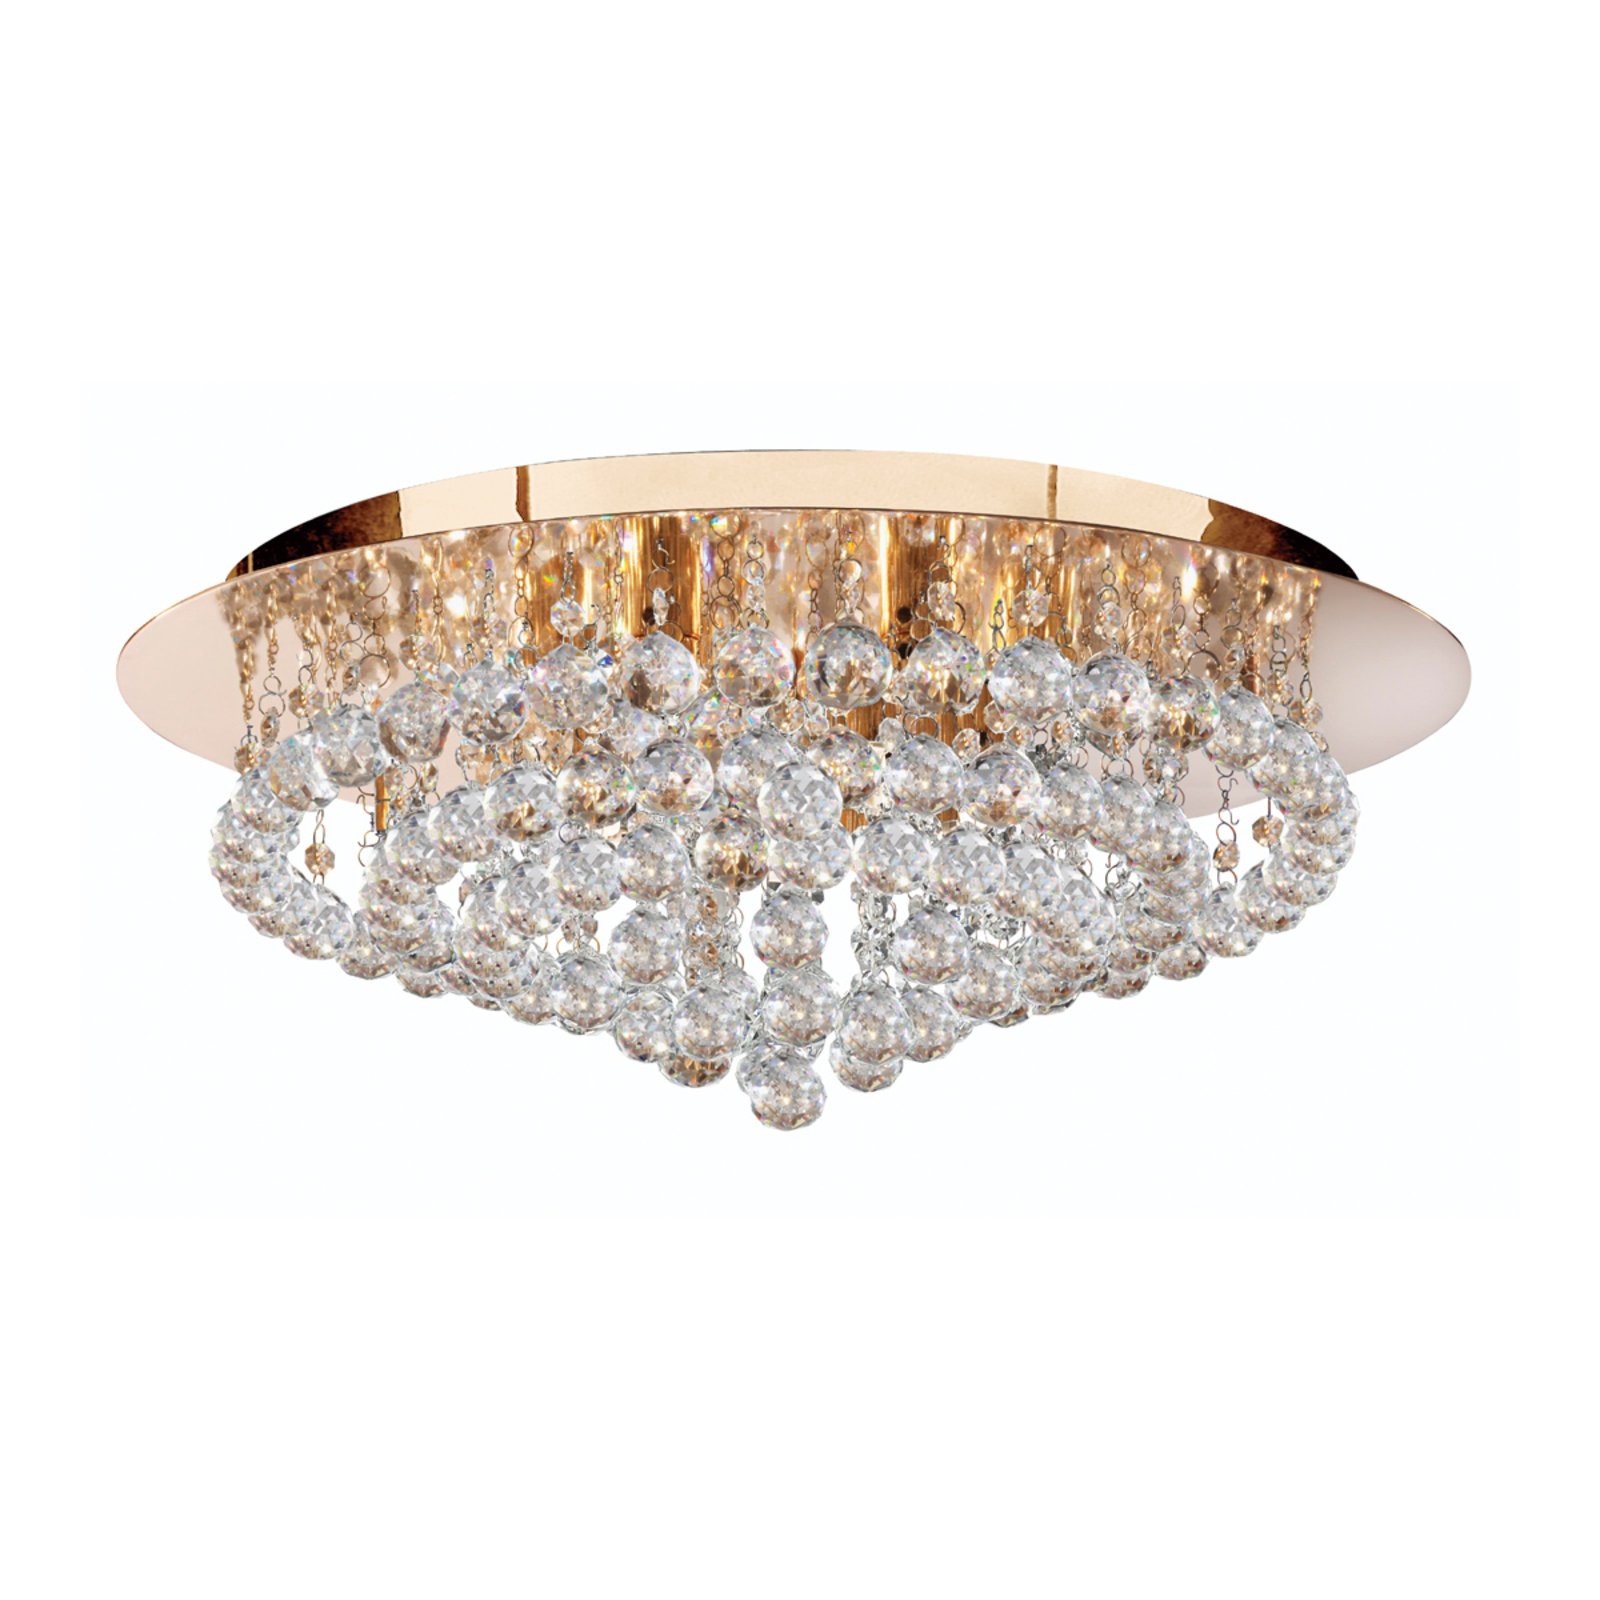 Hanna plafondlamp, goud, kristallen bollen, Ø 55 cm